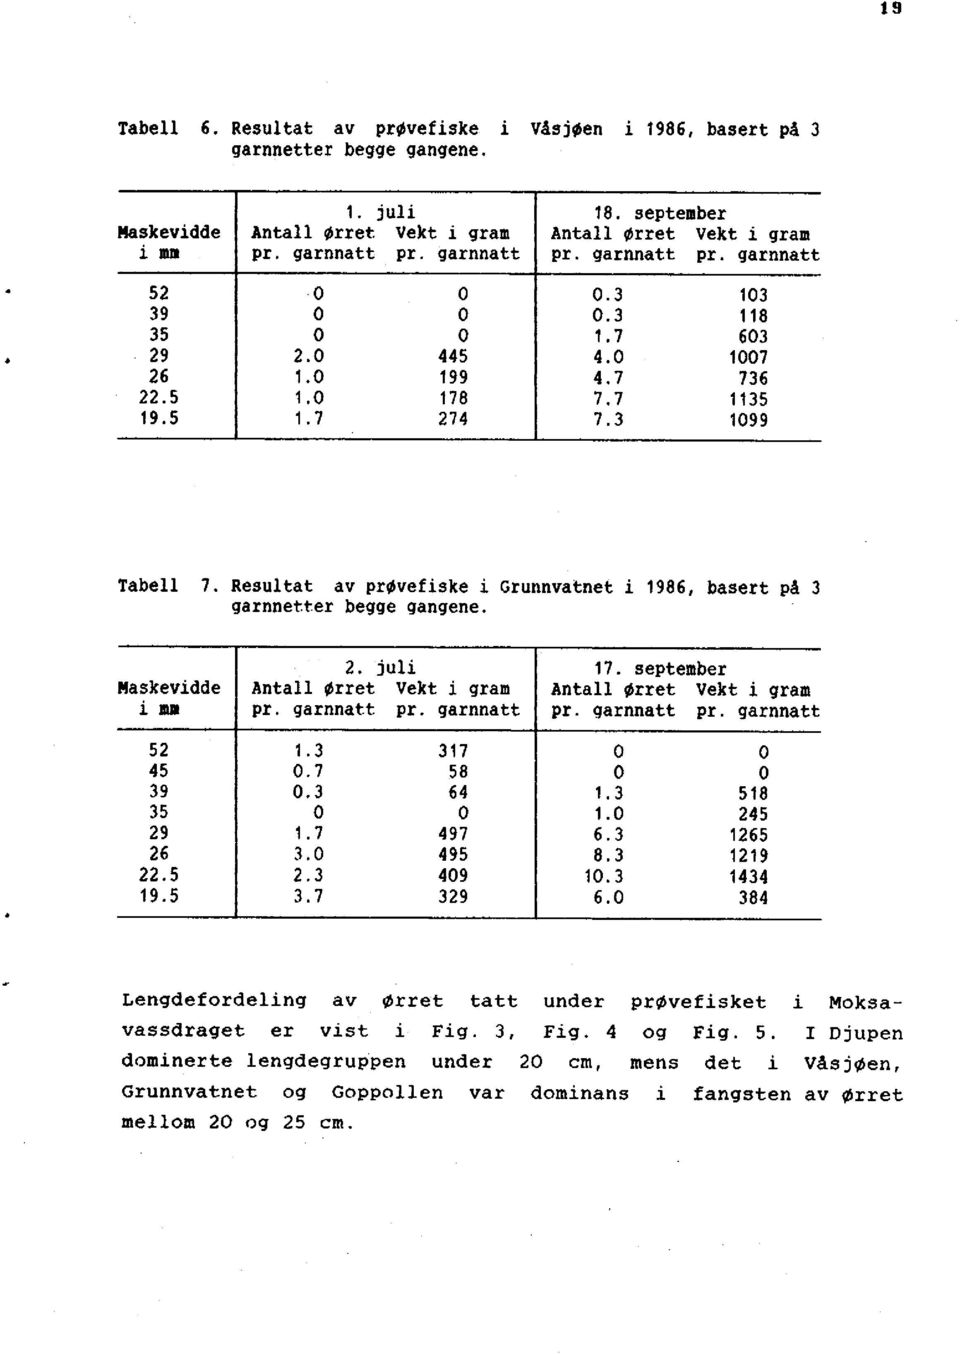 Resultat av prøvefiske i Grunnvatnet i 1986, basert på 3 garnnetter begge gangene. 2. juli 17. september flaskevidde Antall ørret Vekt i gram Antall ørret Vekt i gram i mm pr. garnnatt pr.